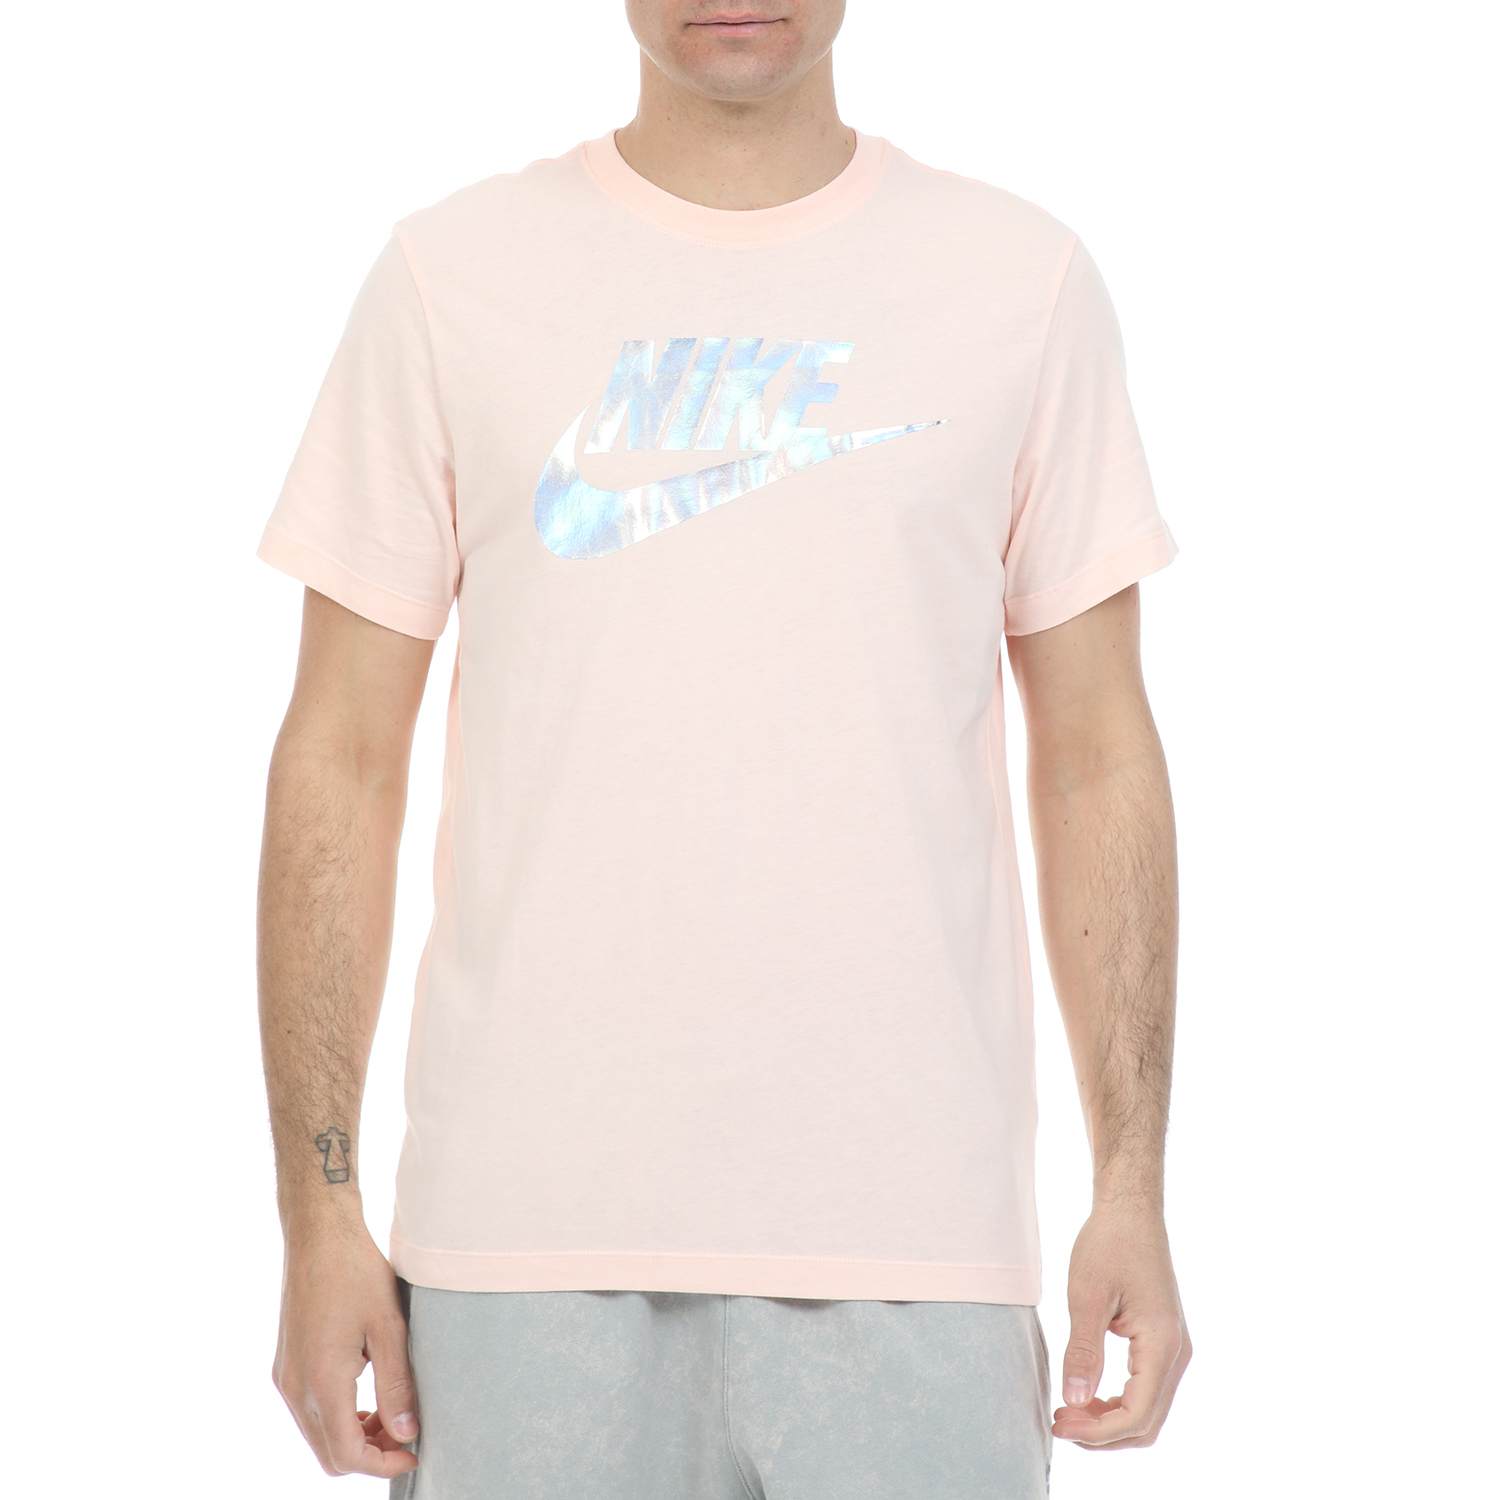 Ανδρικά/Ρούχα/Αθλητικά/T-shirt NIKE - Ανδρικό t-shirt NIKE NSW TEE FESTIVAL HBR ροζ